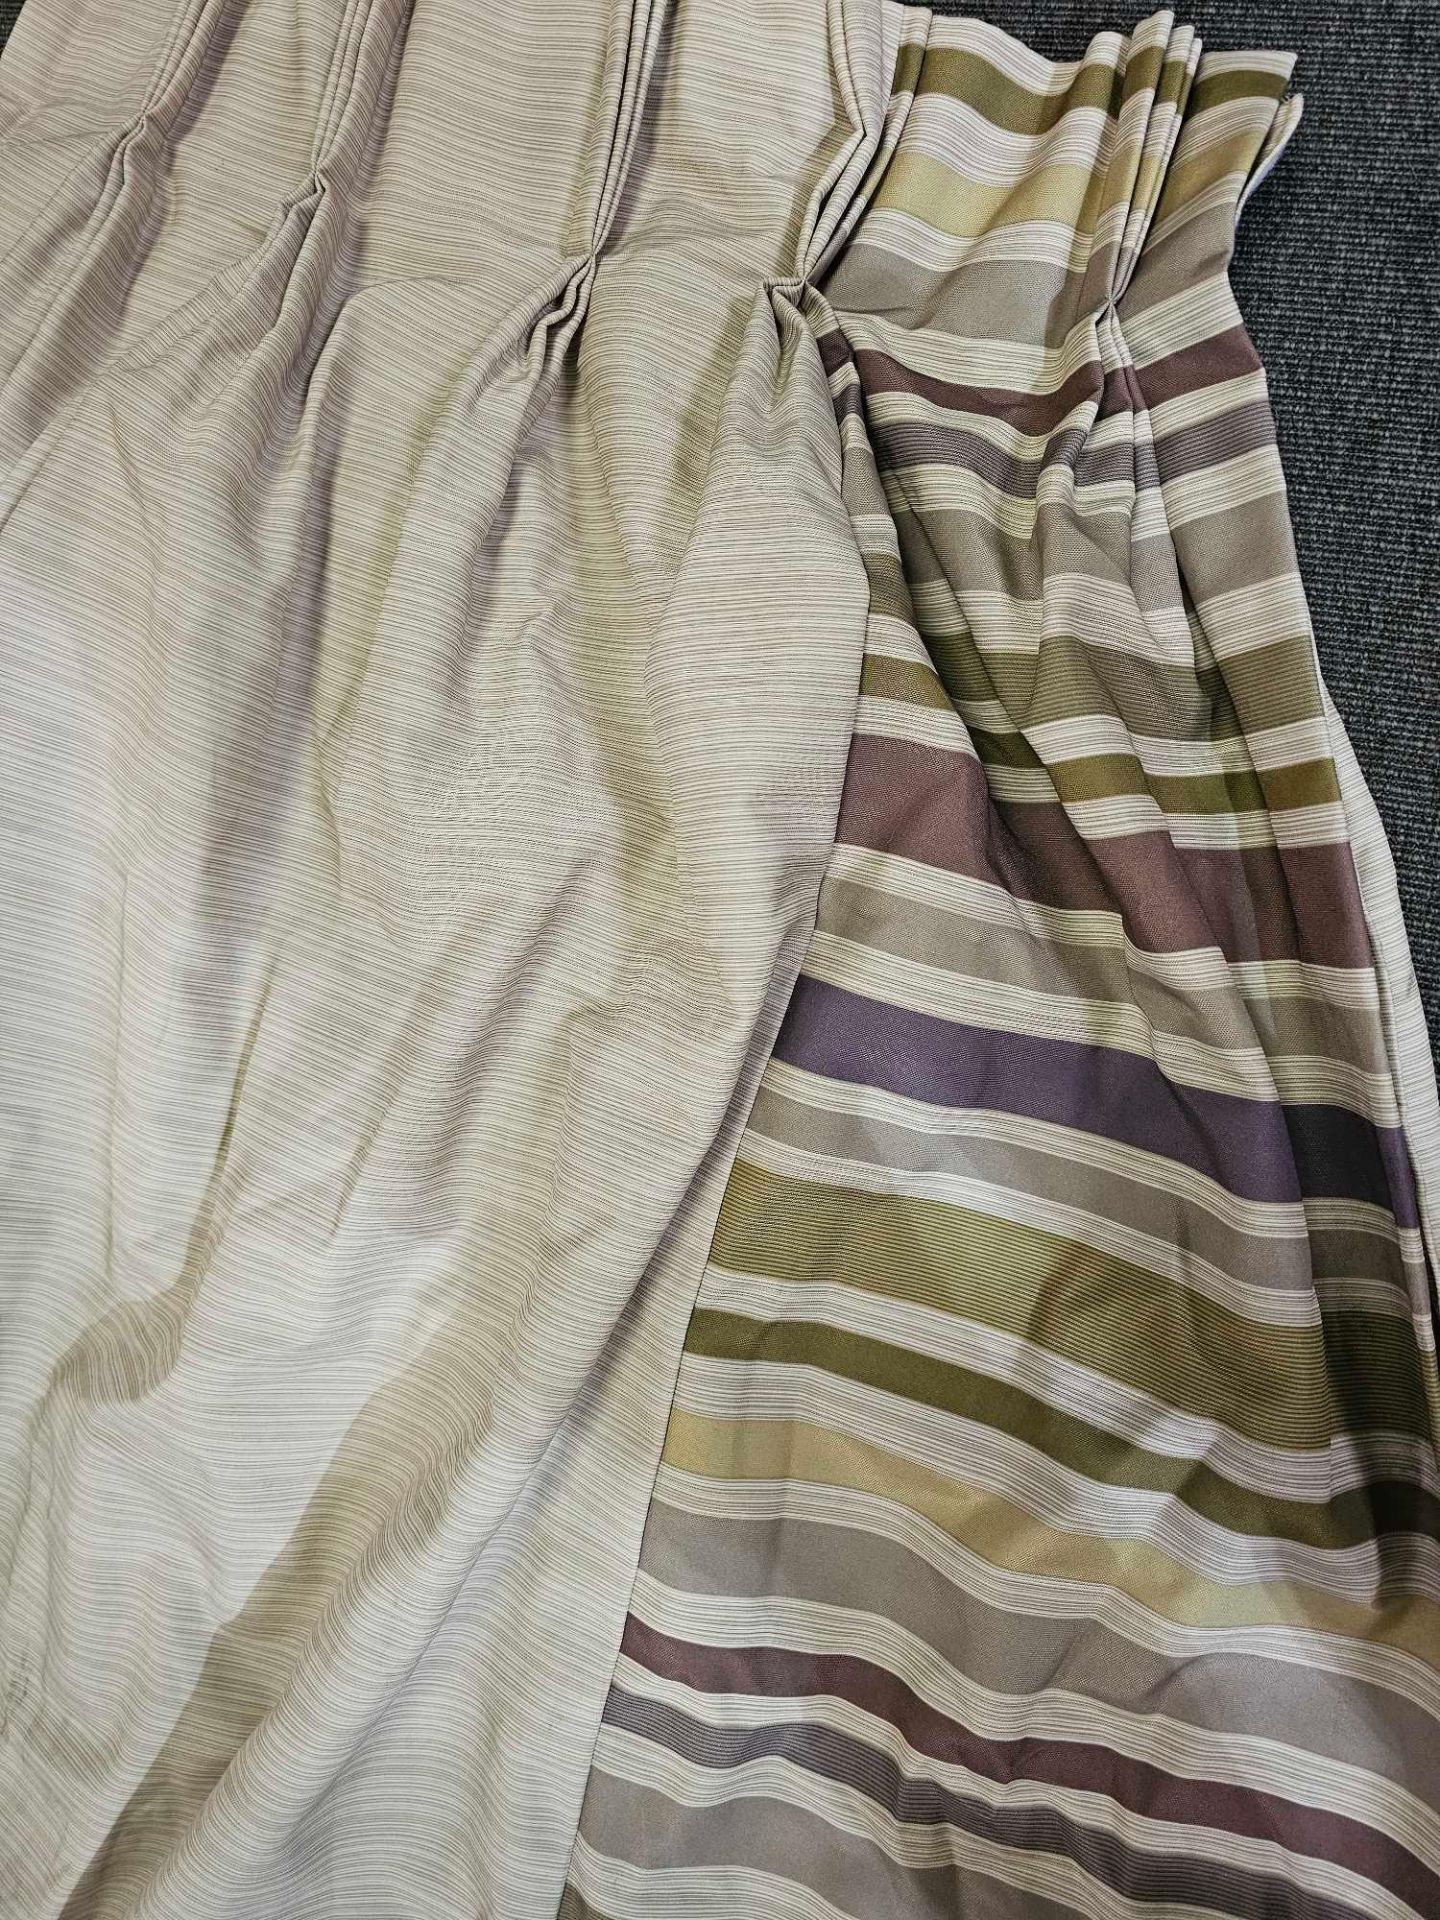 A Pair Of Curtain Cream Striped Edge Purple/Green/Beige/Brown Size 284 x 250cm ( Ref Red 154) - Bild 2 aus 2